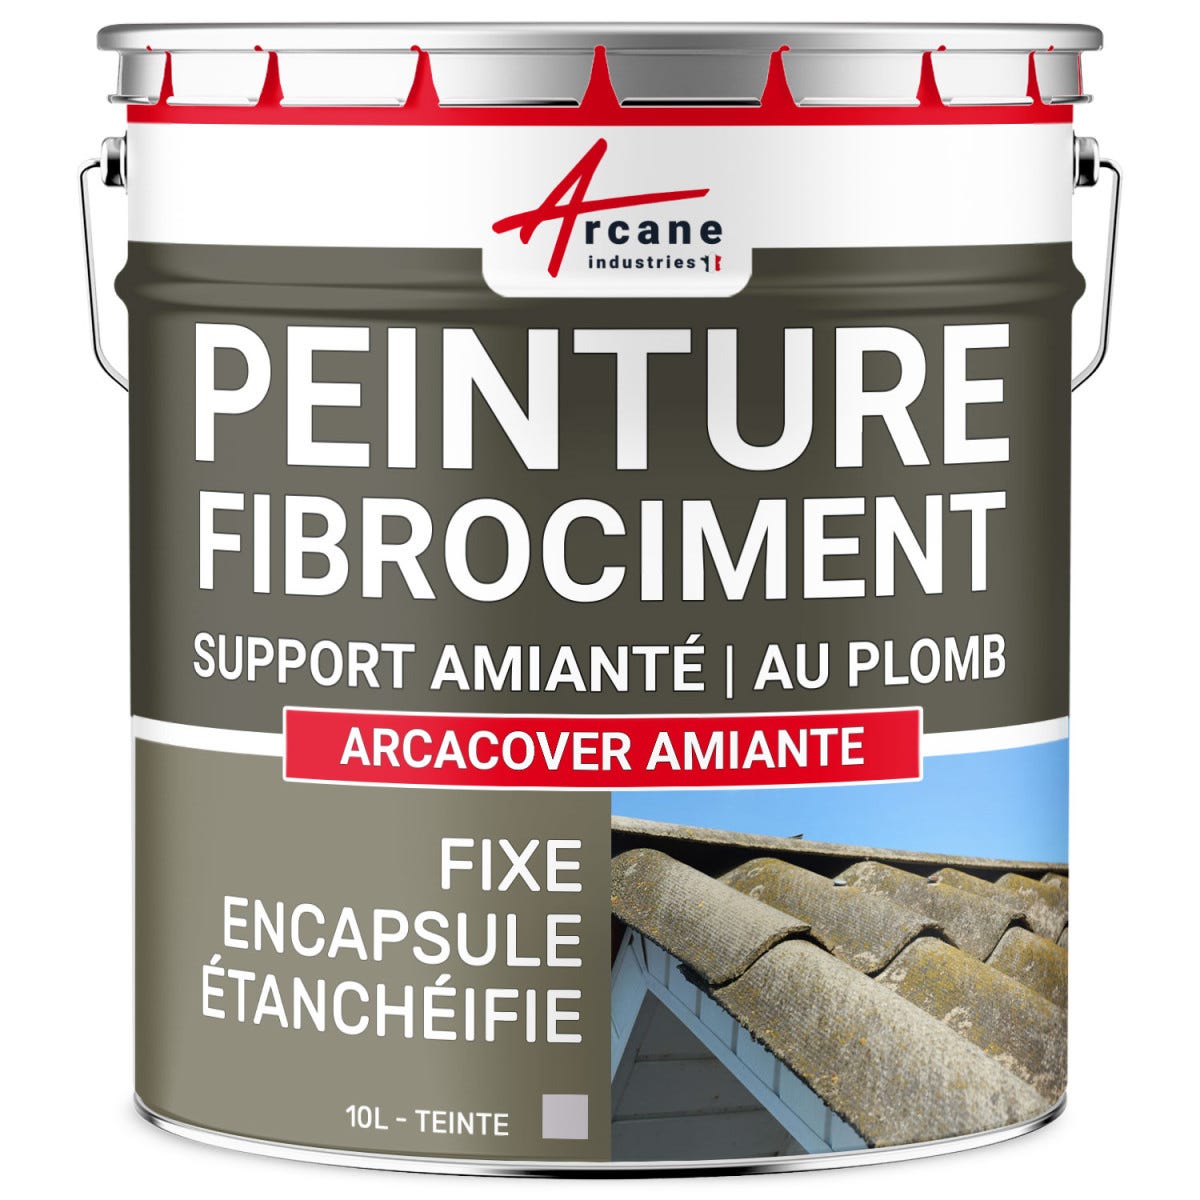 Peinture fibro ciment pour encapsulage support amiante / plomb : ARCACOVER AMIANTE. Gris - 10 L - ARCANE INDUSTRIES 0